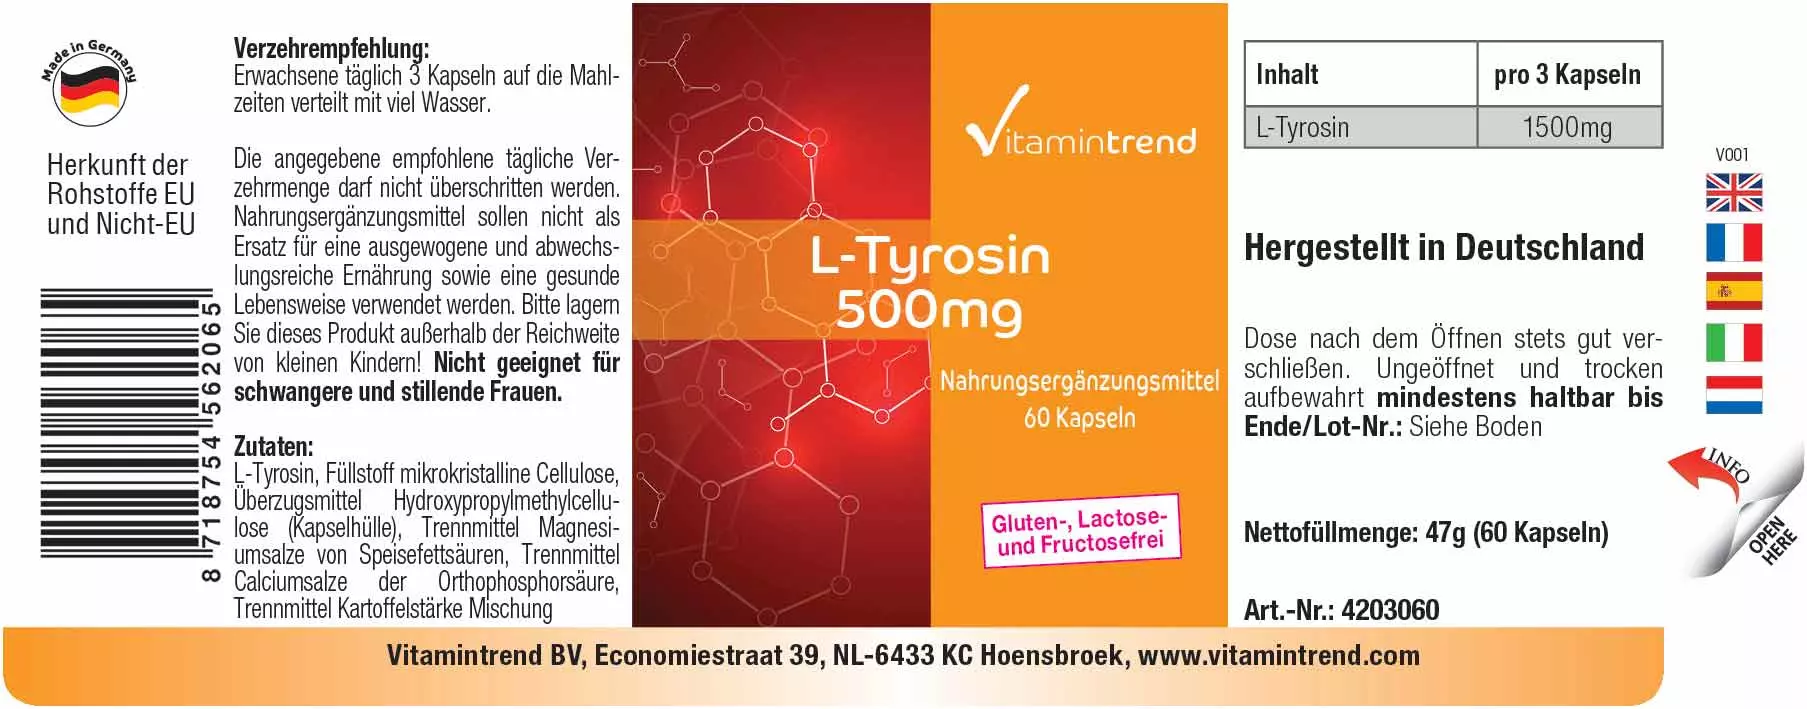 L-Tyrosin 500mg - 60 Kapseln - proteinogene Aminosäre